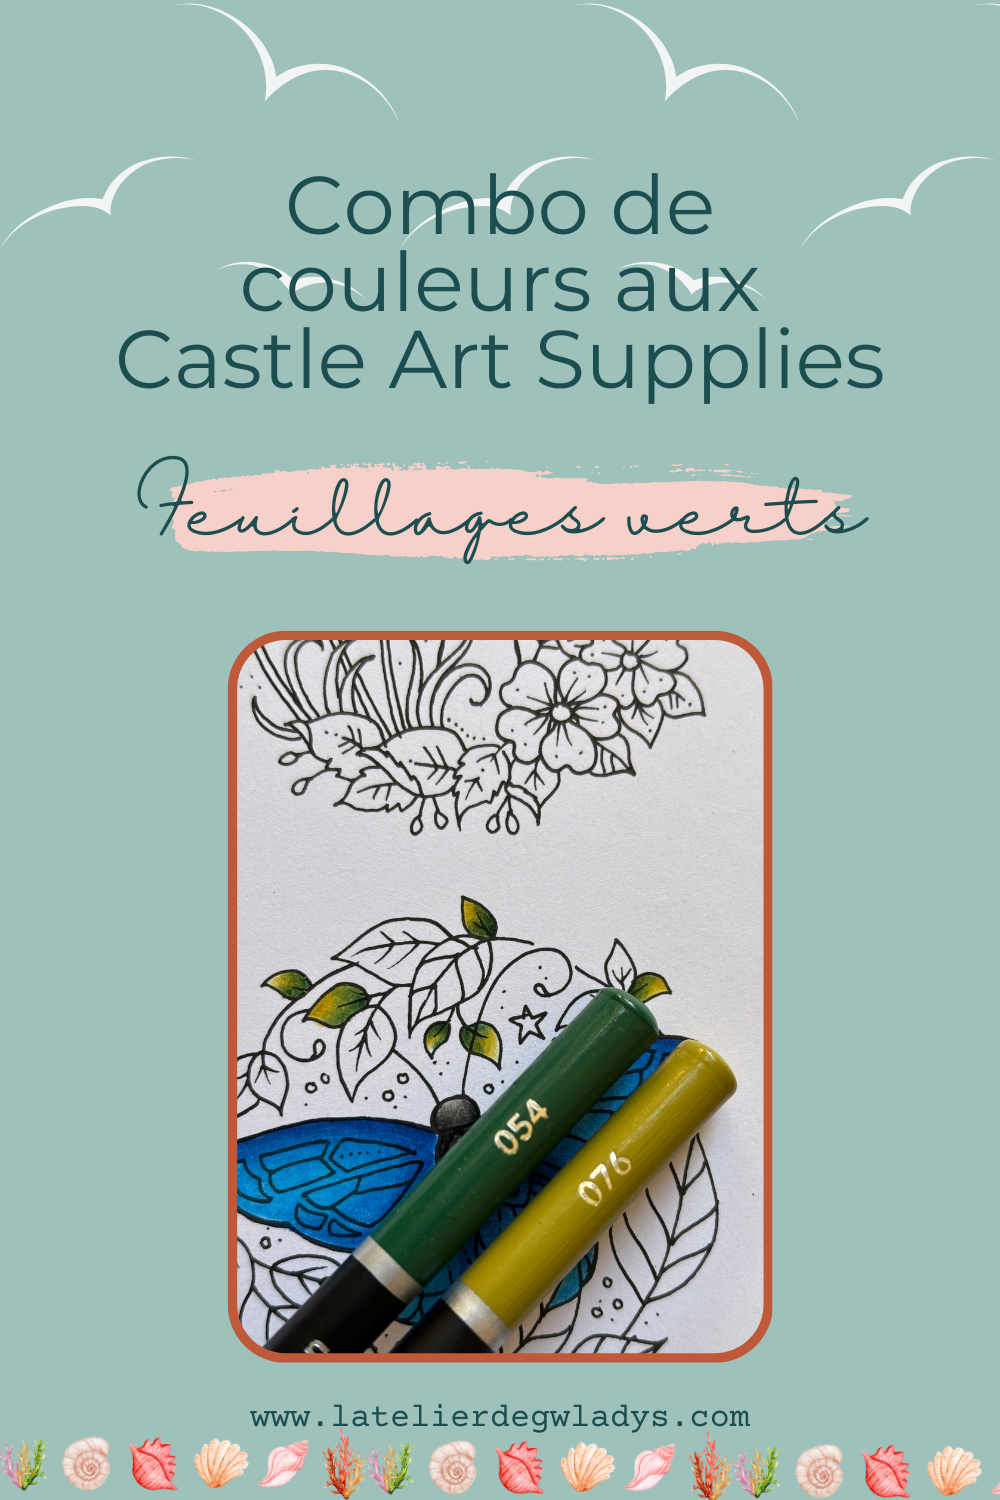 l-atelier-de-gwladys-combo-couleurs-castle-art-supplies-papillon-feuillages-verts.png